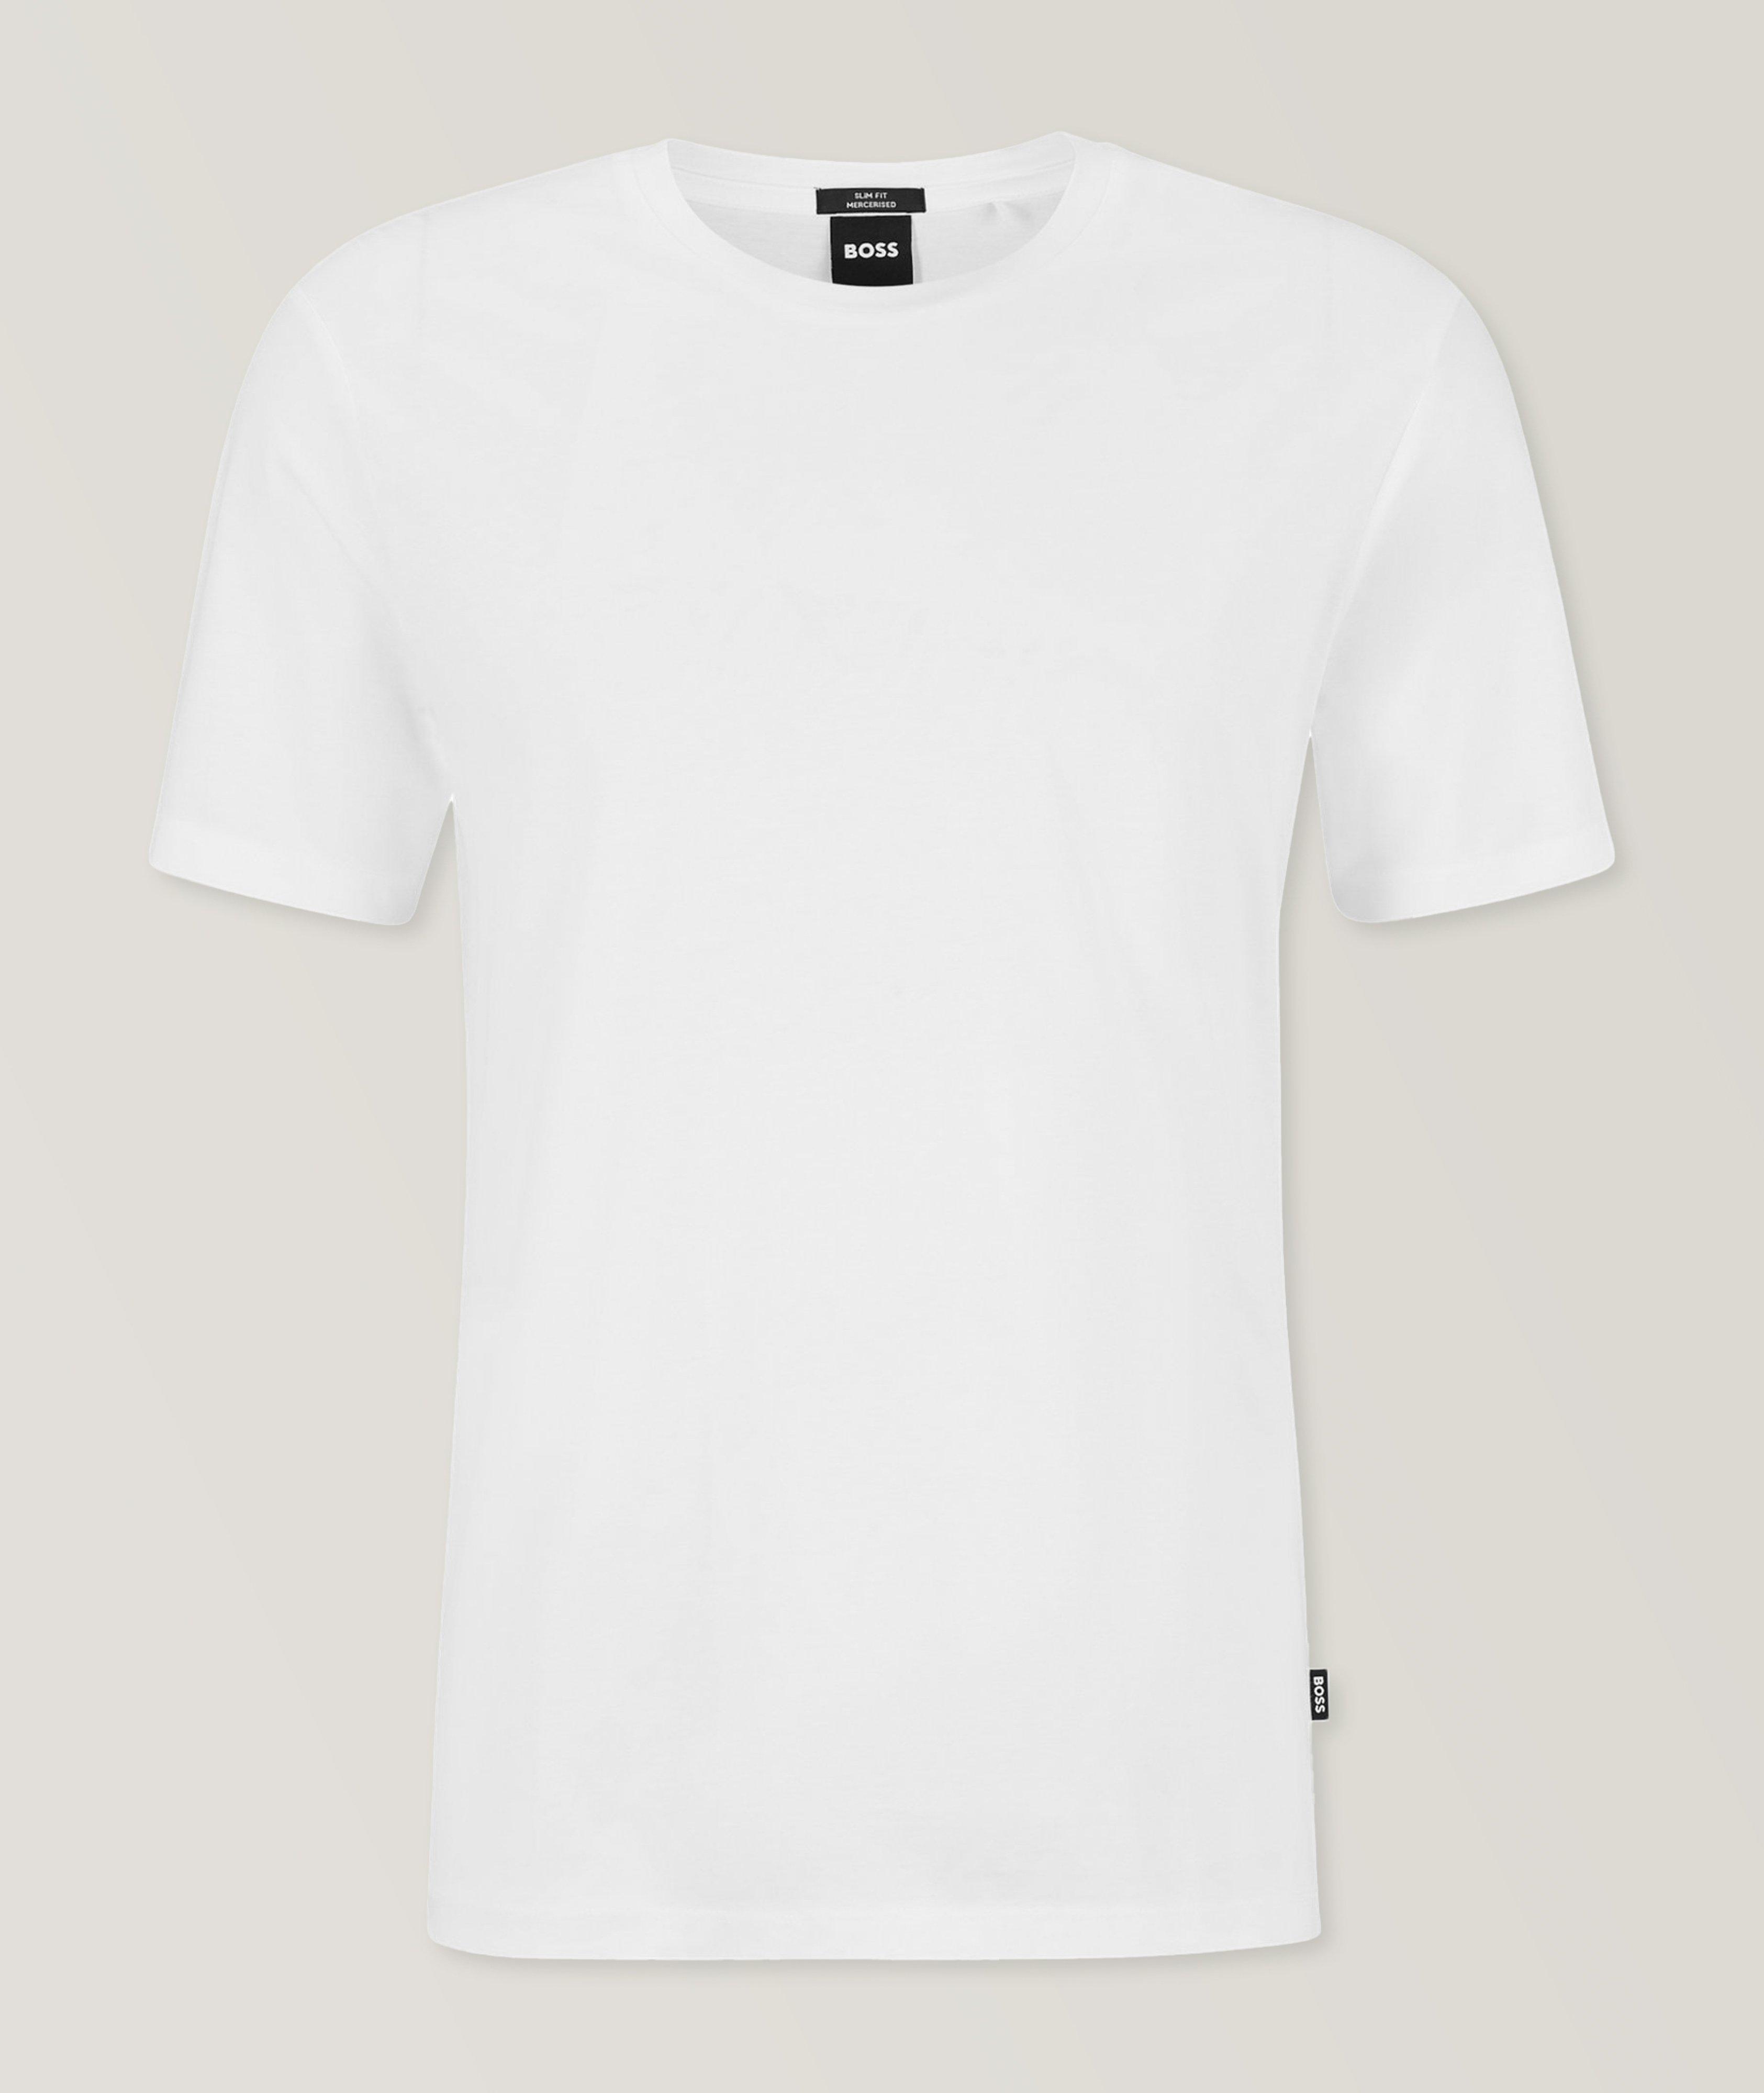 Tessler Mercerised Cotton Jersey T-Shirt image 0